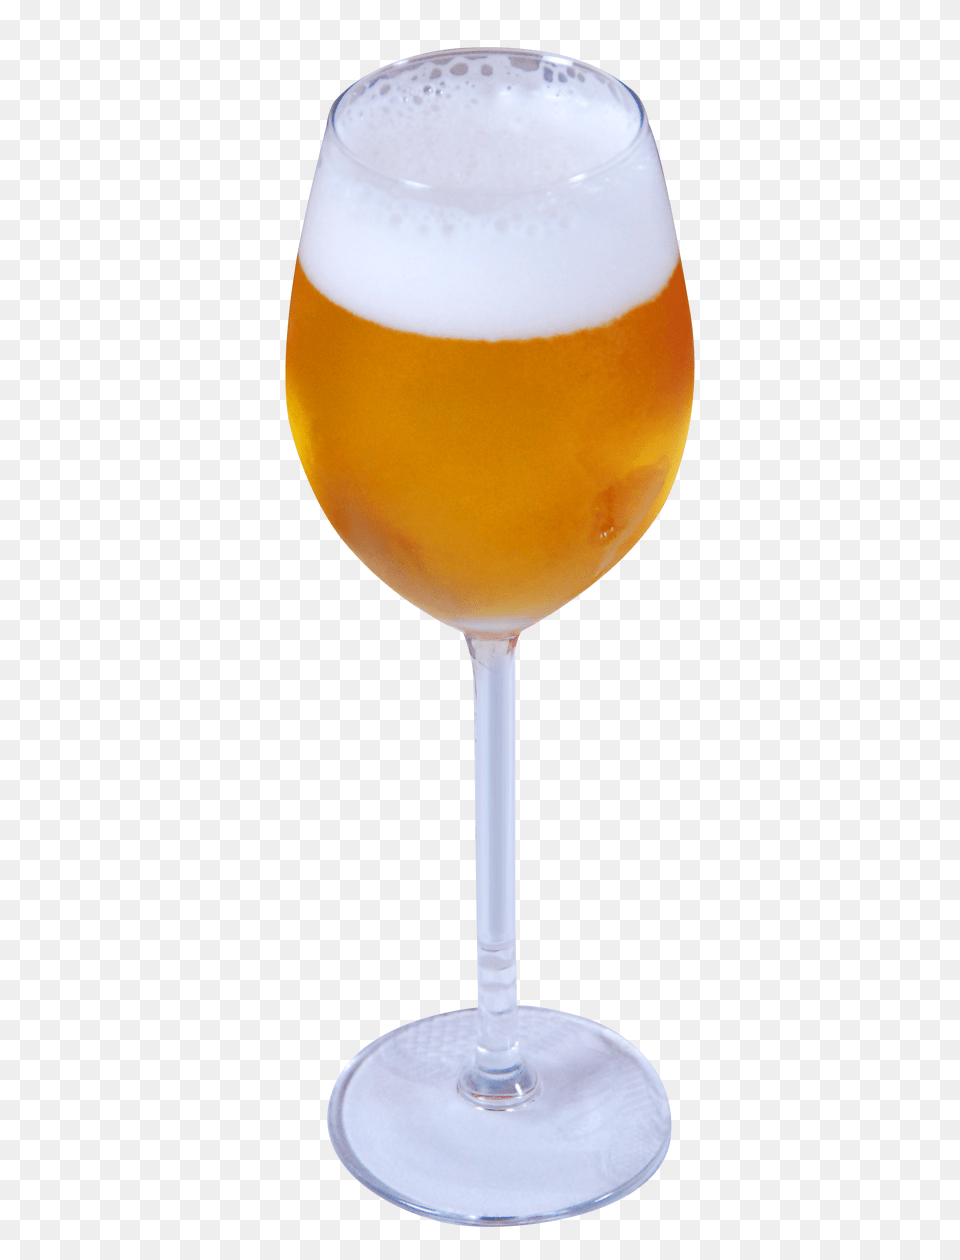 Pngpix Com Beer Glass Transparent 1, Alcohol, Beverage, Beer Glass, Liquor Png Image